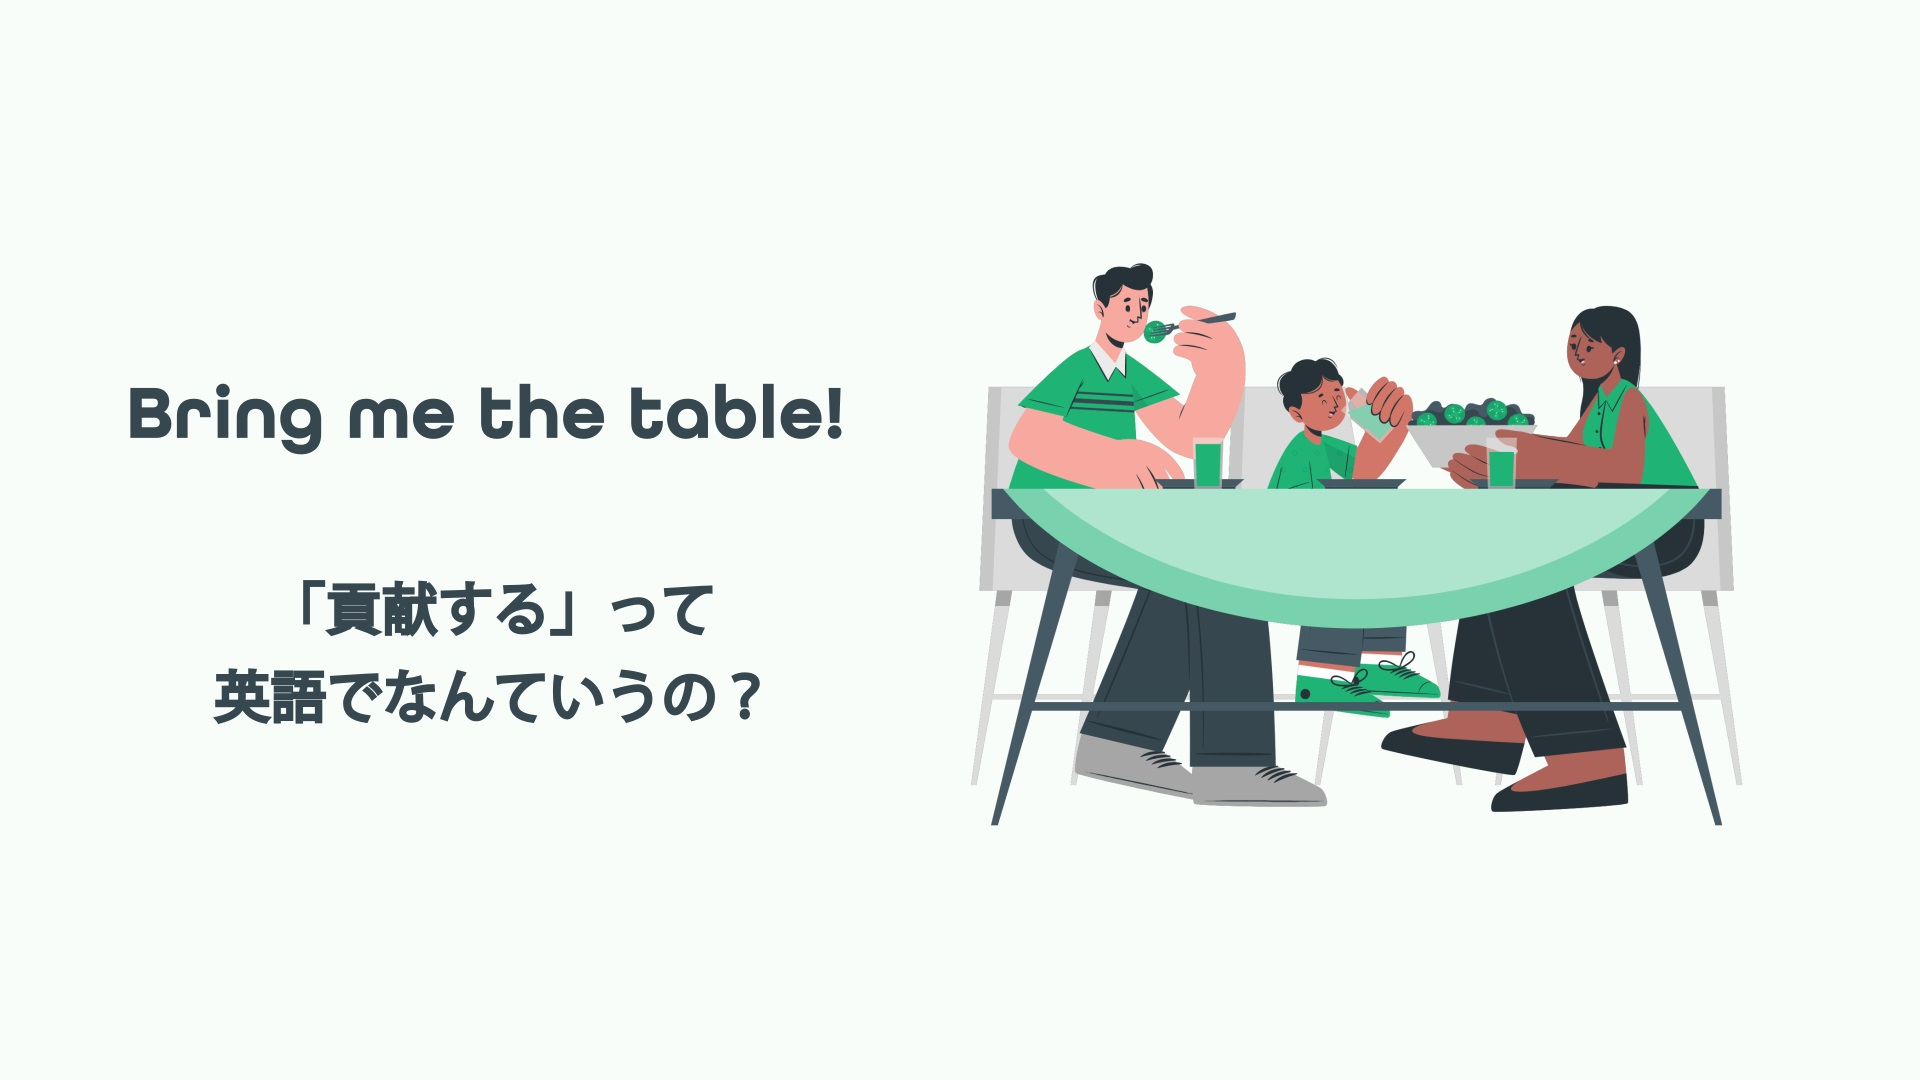 Bring me the table! 「貢献する」って英語でなんていうの？